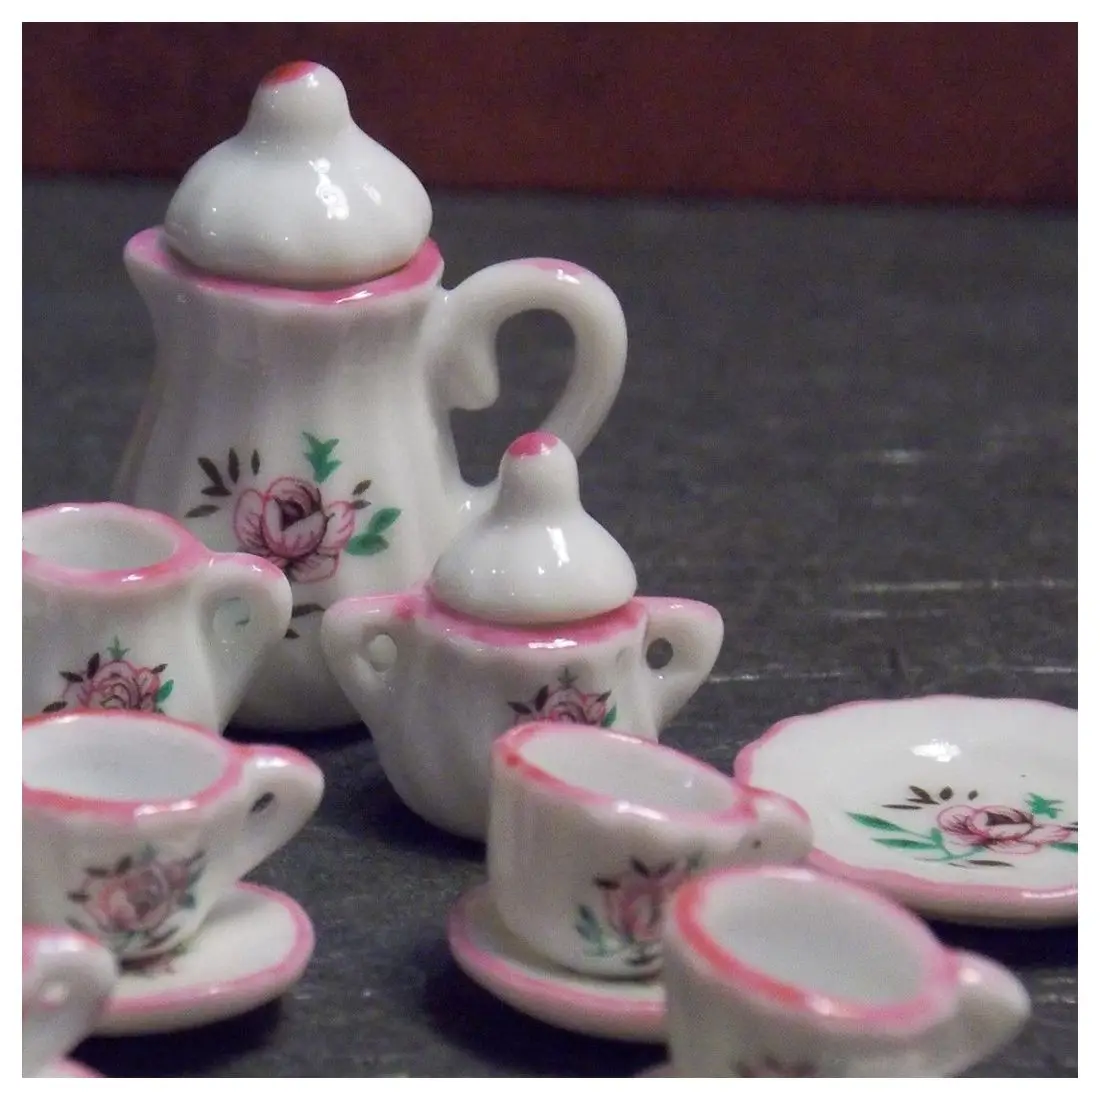 Миниатюрный чайный набор FBIL-Dollhouse, розовый, зеленый, 17 шт., чайный горшок, тарелки 1: 12 дюймов, шкала